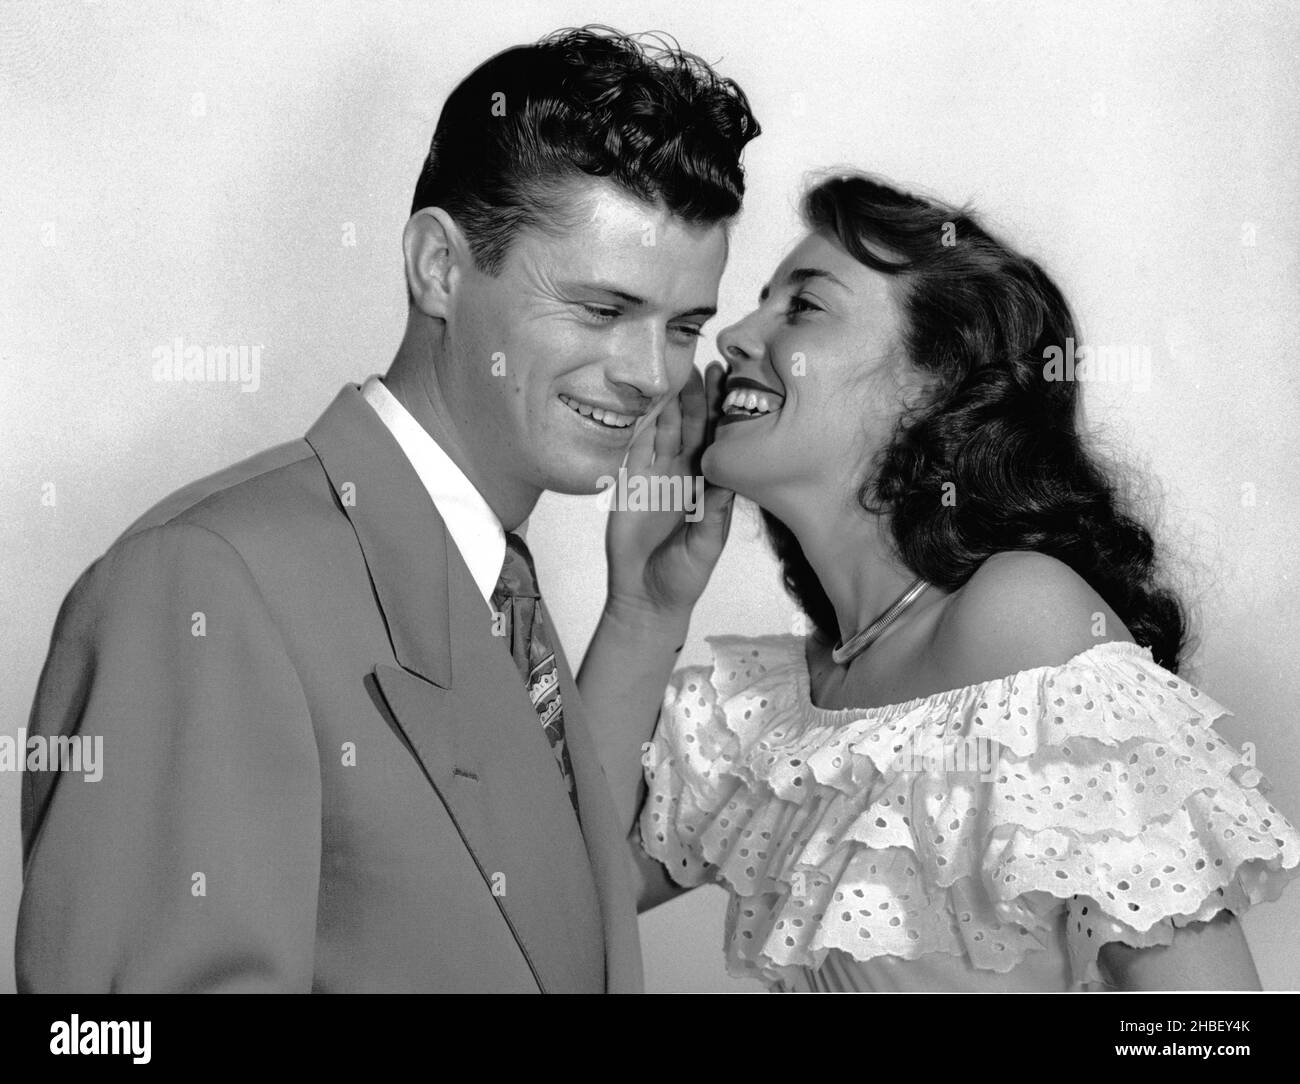 Junge Männer und Frauen in den 30er Jahren, gut gekleidet, posierten,  während Frau dem Mann ein Geheimnis flüstert. Beide lächelten. Ca. 1960  Stockfotografie - Alamy